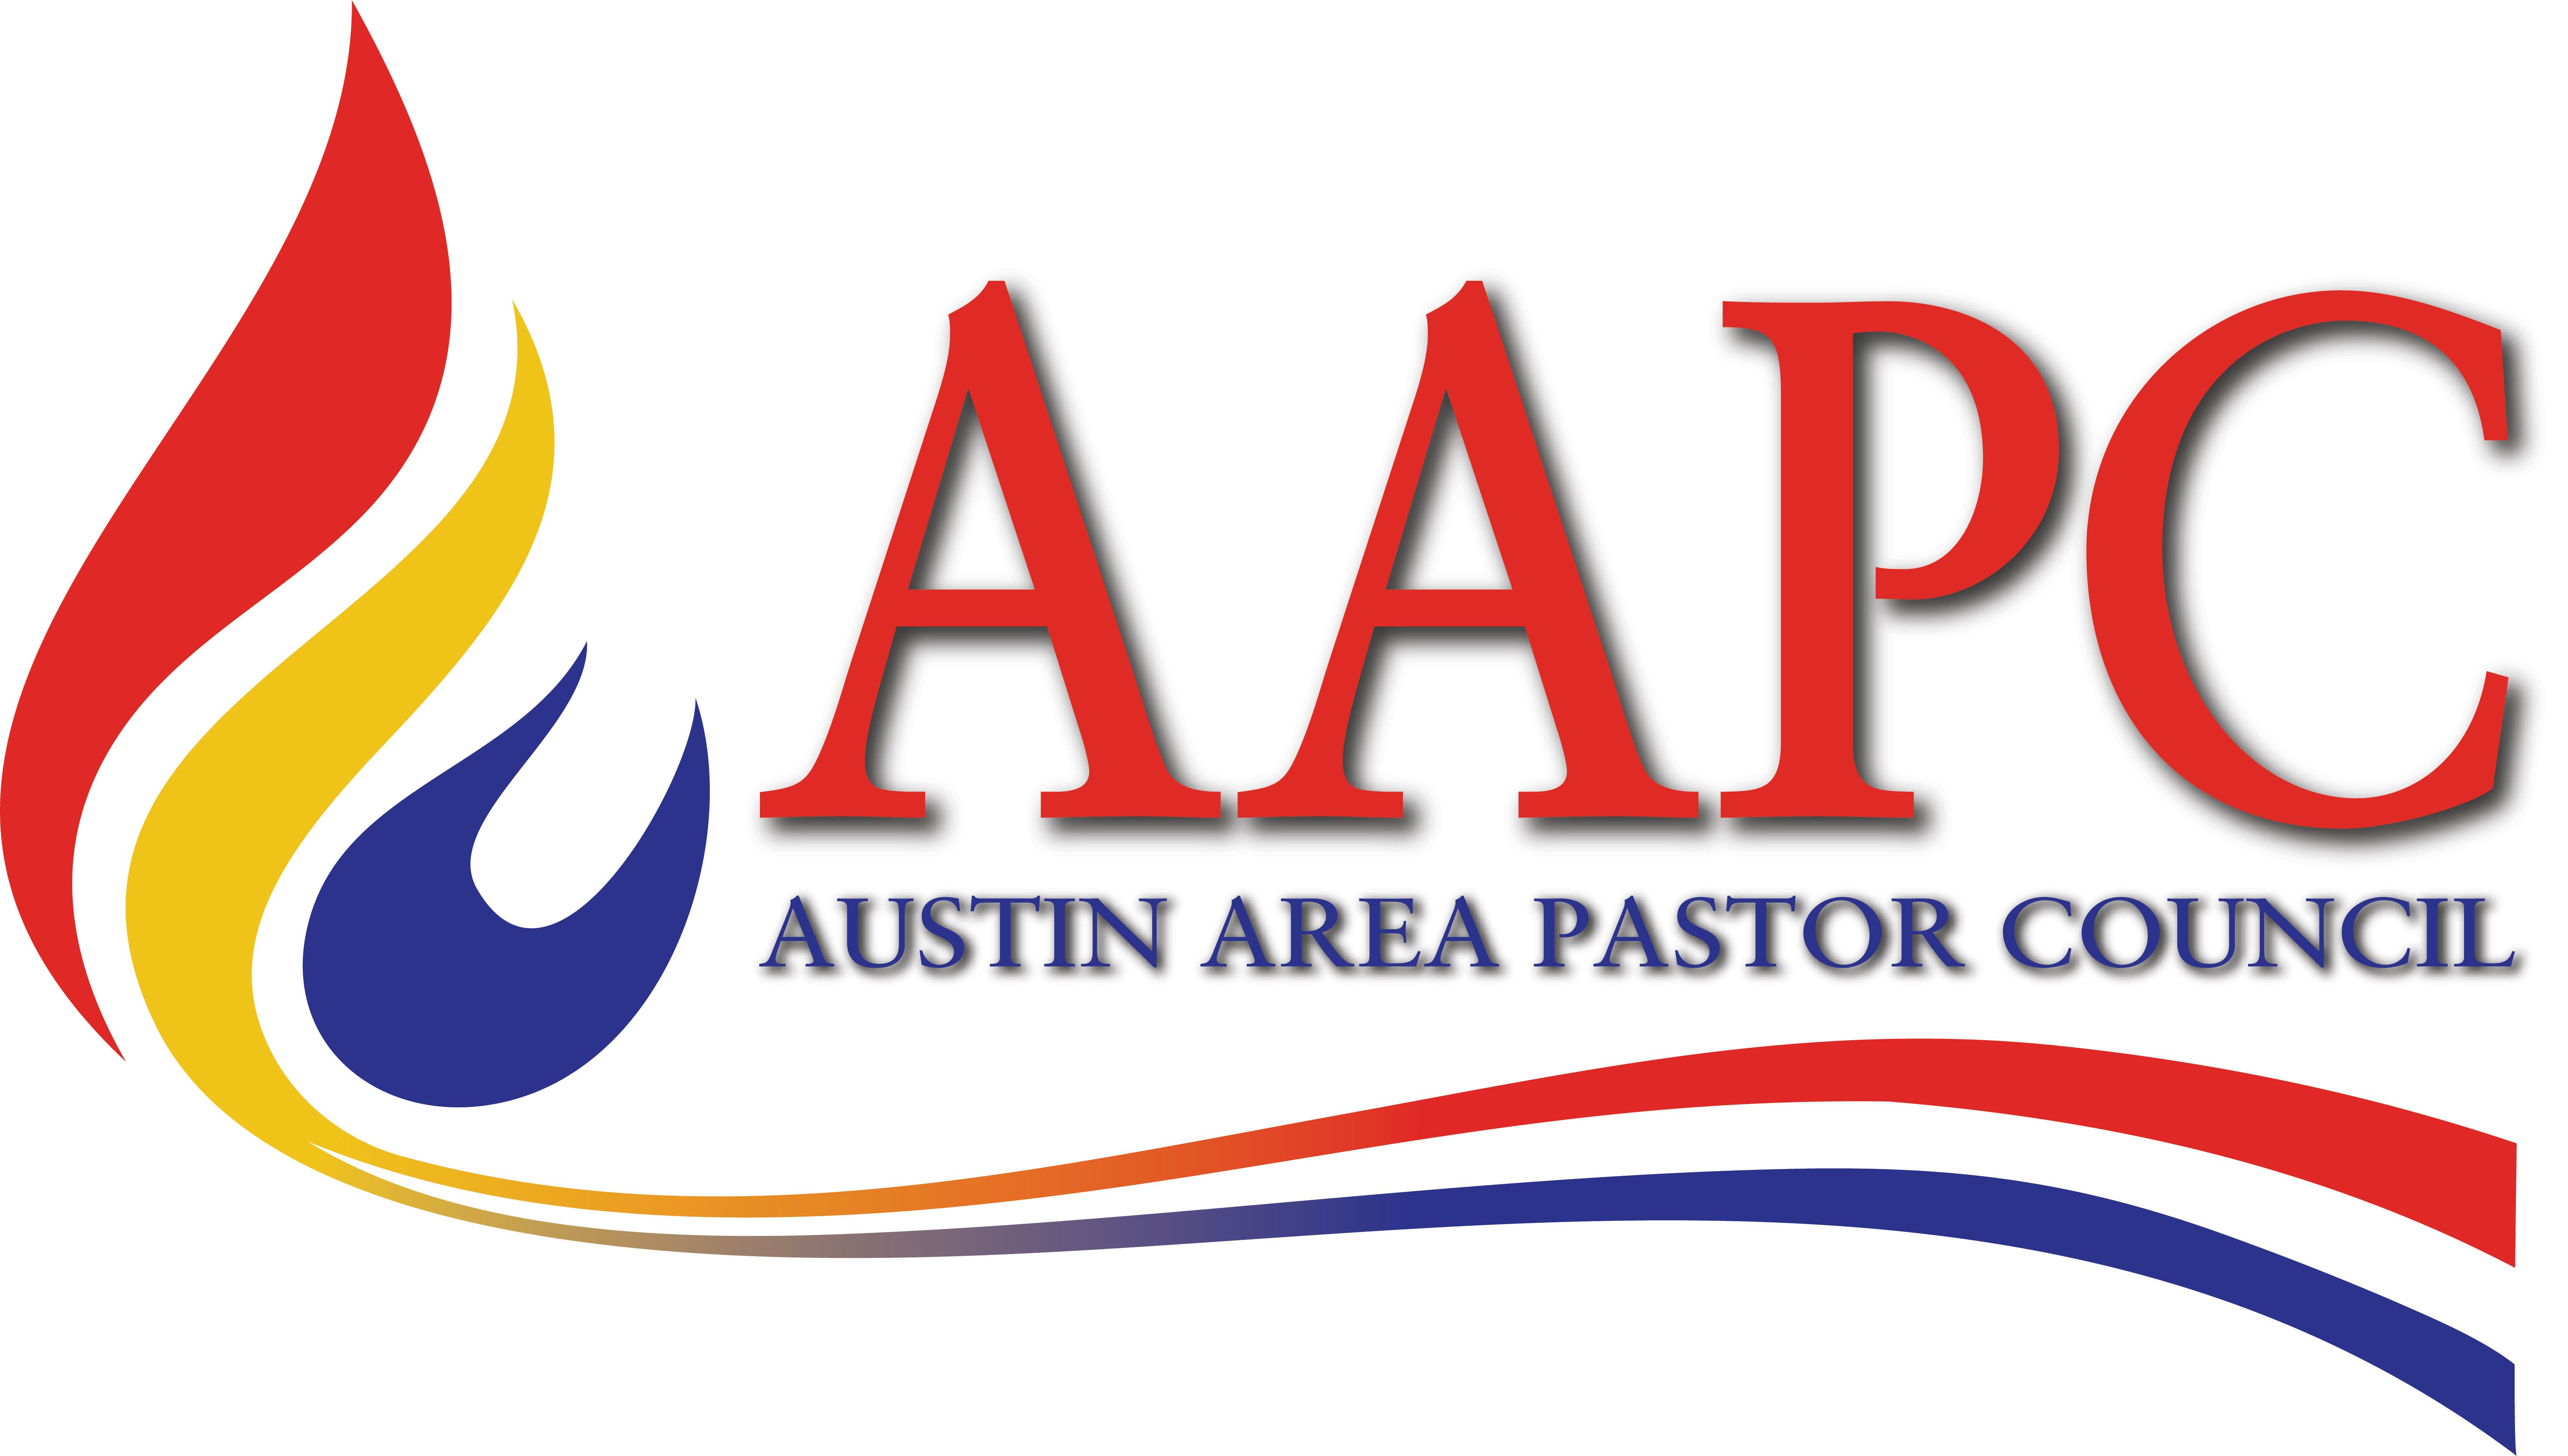 Austin Area Pastor Council